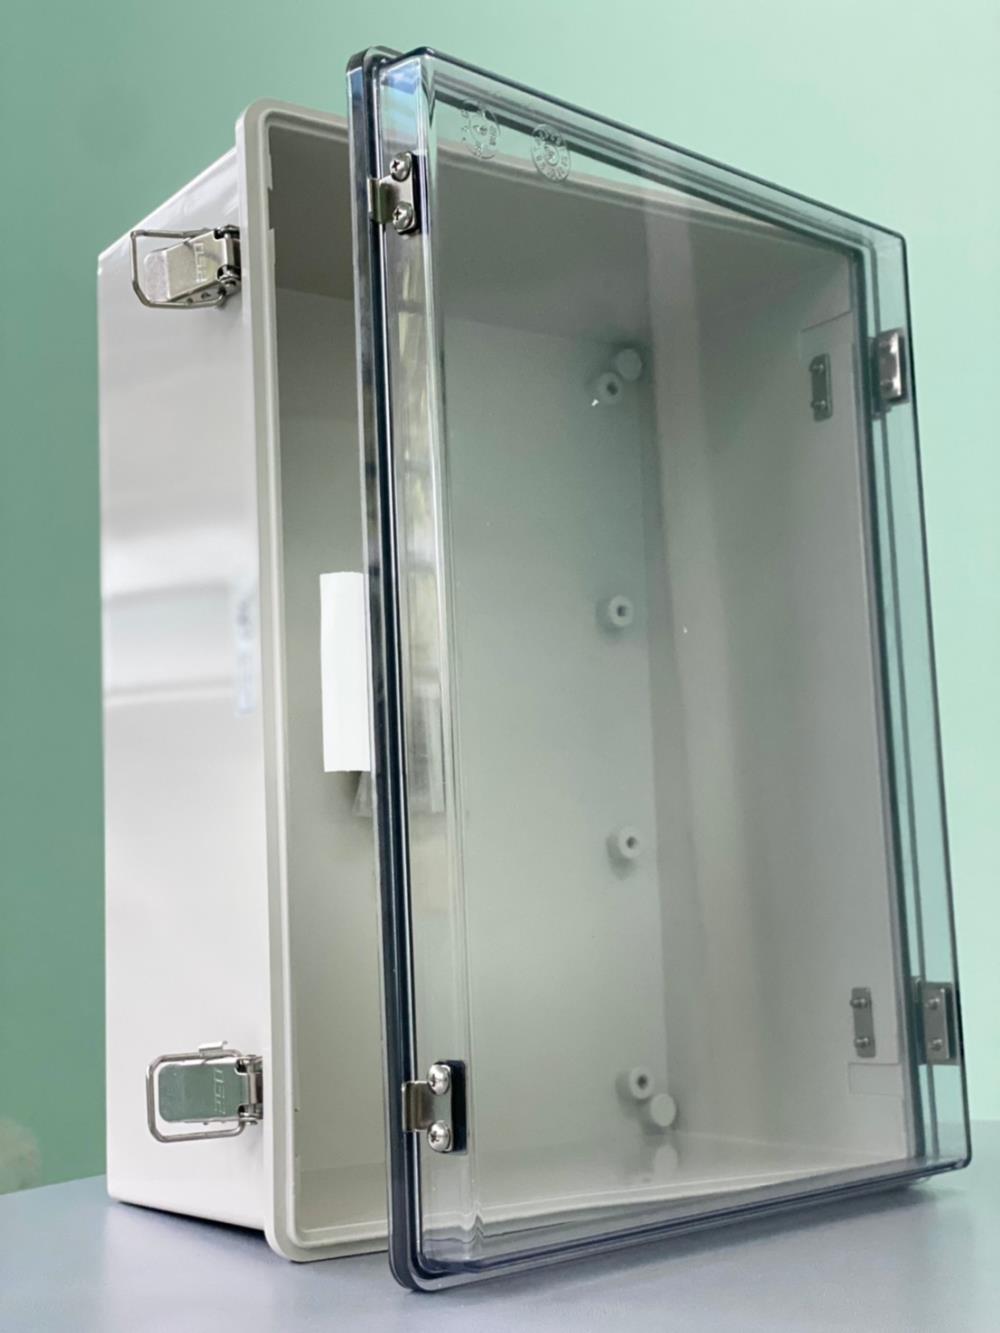 ตู้คอลโทรลพลาสติก (Control box) IP67,terminal box #กล่องเทอร์มินอล # กล่องIP67#กล่องกันน้ำกันฝุ่น#กล่องบานสวิง #Enclosures#boxกันน้ำ#ตู้กันน้ำ #ตู้คอลโทรล#ตู้พลาสติก,HIBOX,Machinery and Process Equipment/Chambers and Enclosures/Enclosures